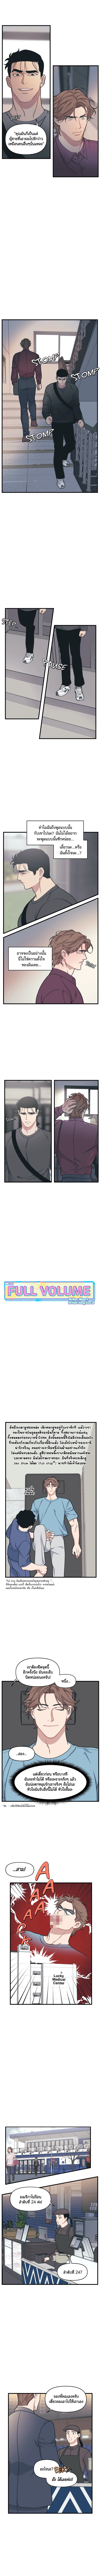 Full-Volume-8-4f84d5b09a3b9373f.jpg